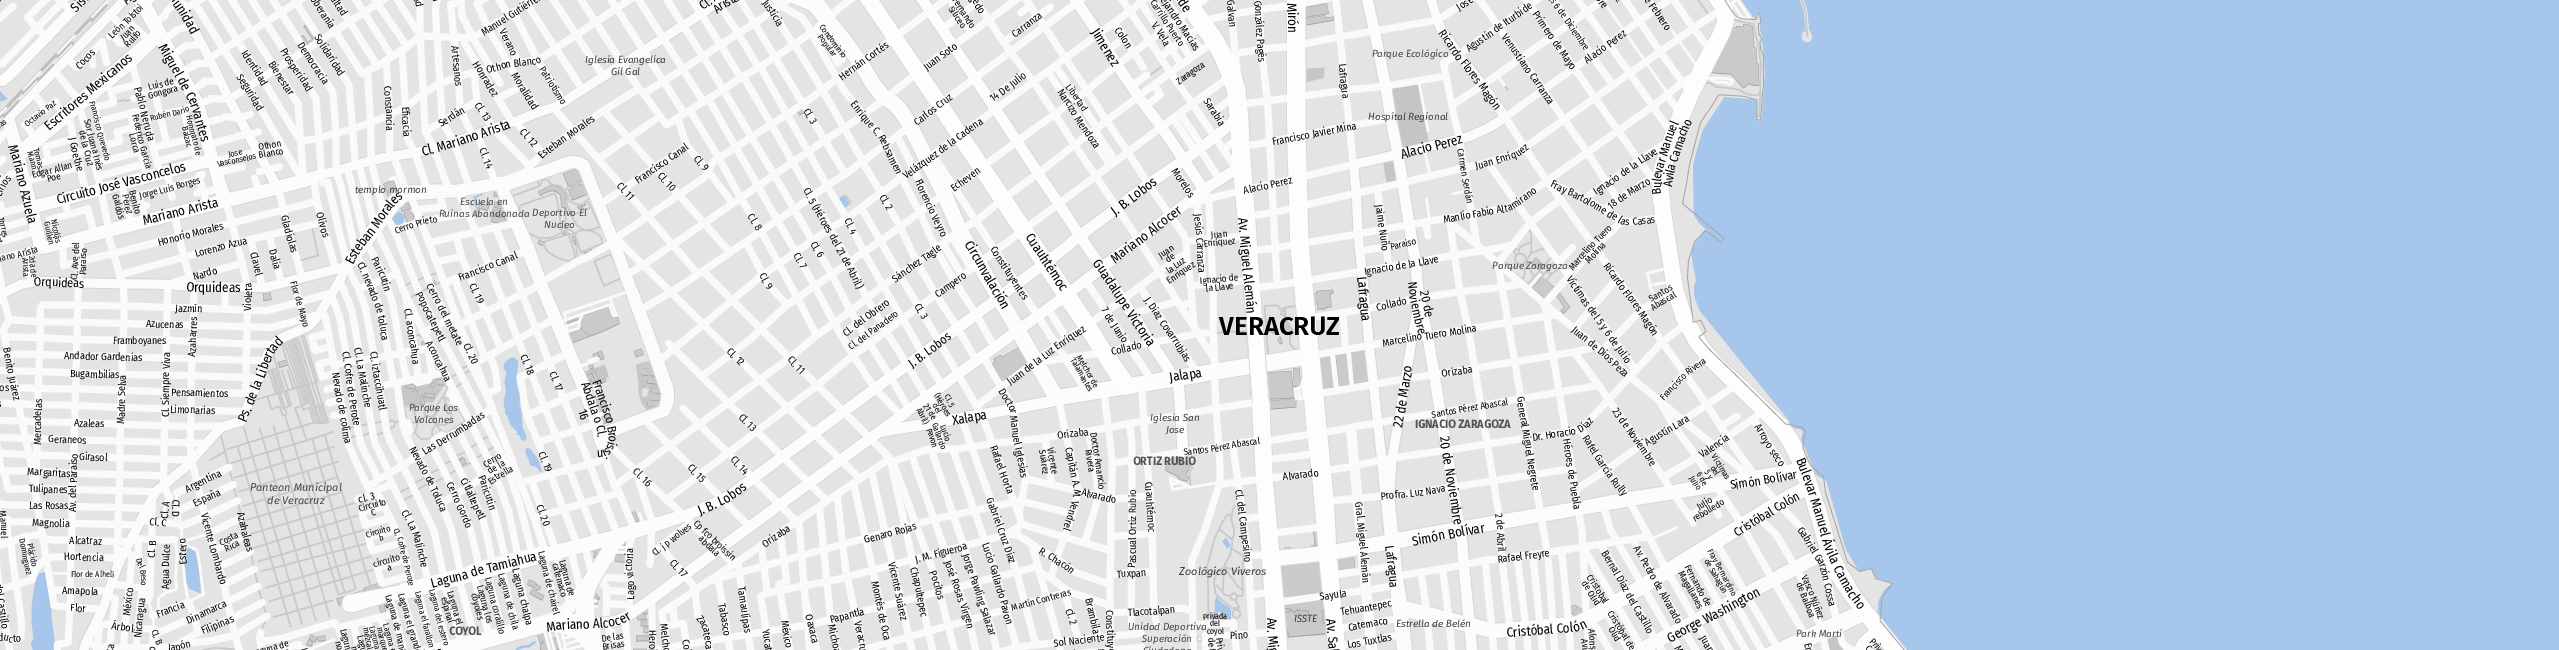 Stadtplan Veracruz zum Downloaden.